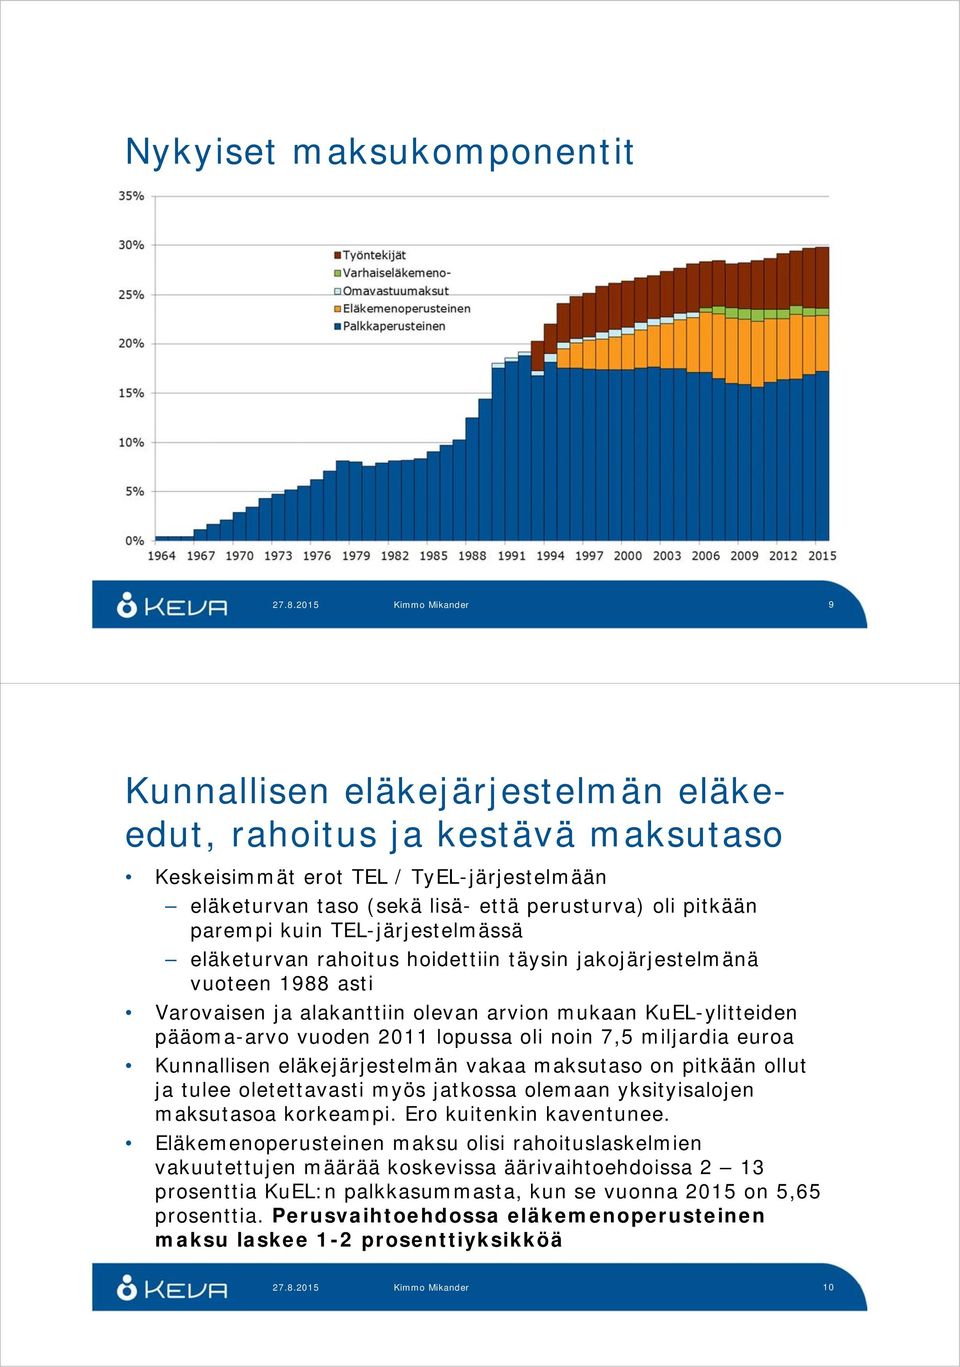 lopussa oli noin 7,5 miljardia euroa Kunnallisen eläkejärjestelmän vakaa maksutaso on pitkään ollut ja tulee oletettavasti myös jatkossa olemaan yksityisalojen maksutasoa korkeampi.